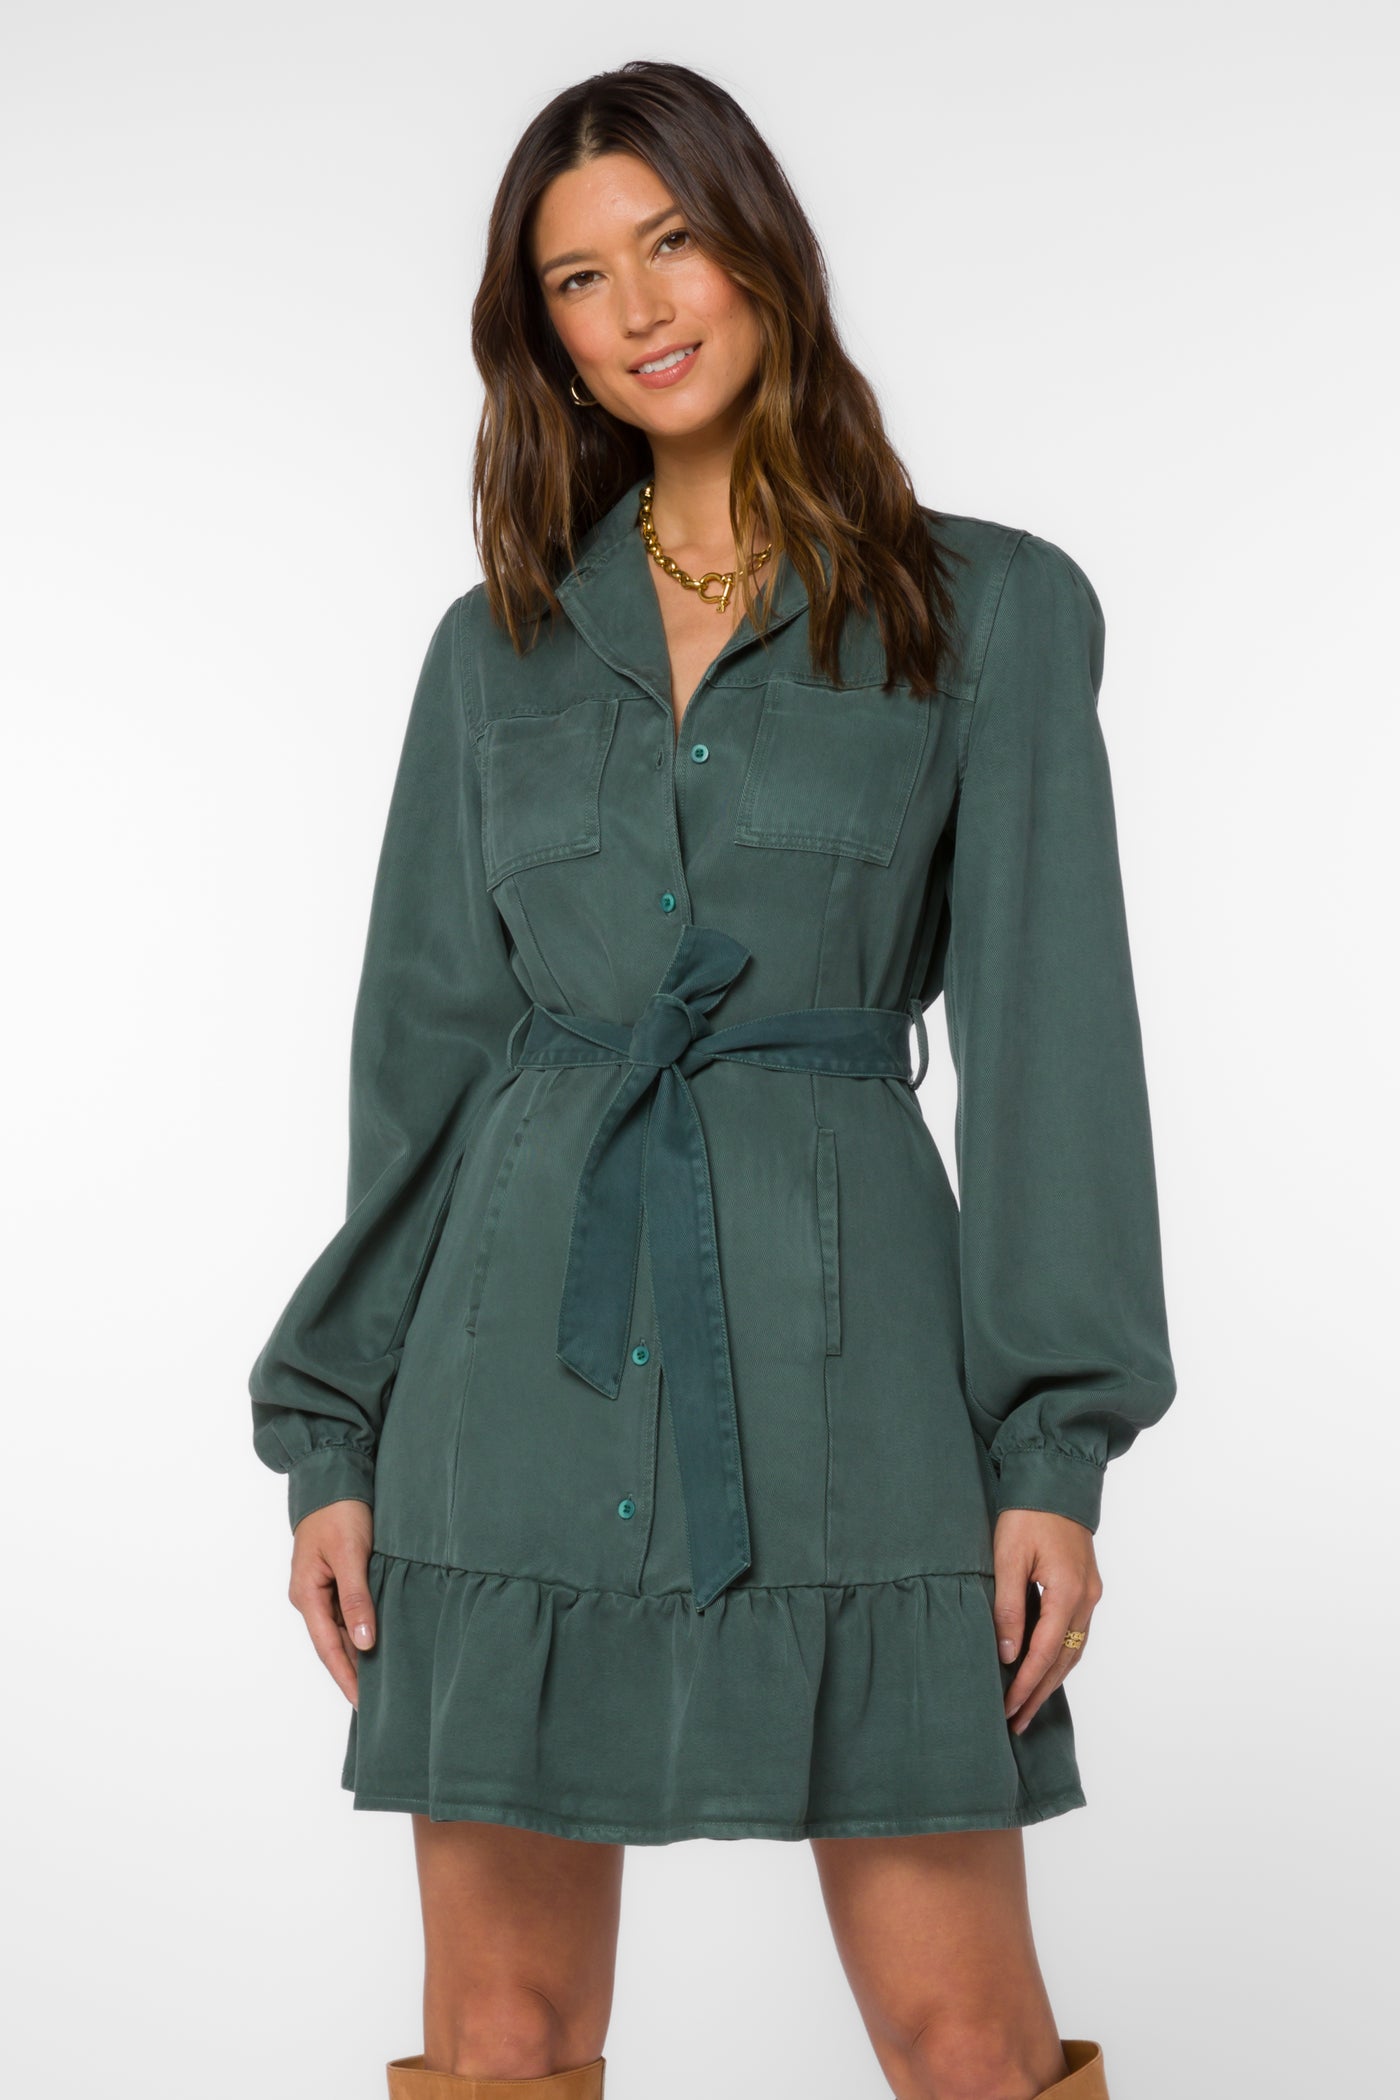 Bethenny Dark Green Dress - Dresses - Velvet Heart Clothing